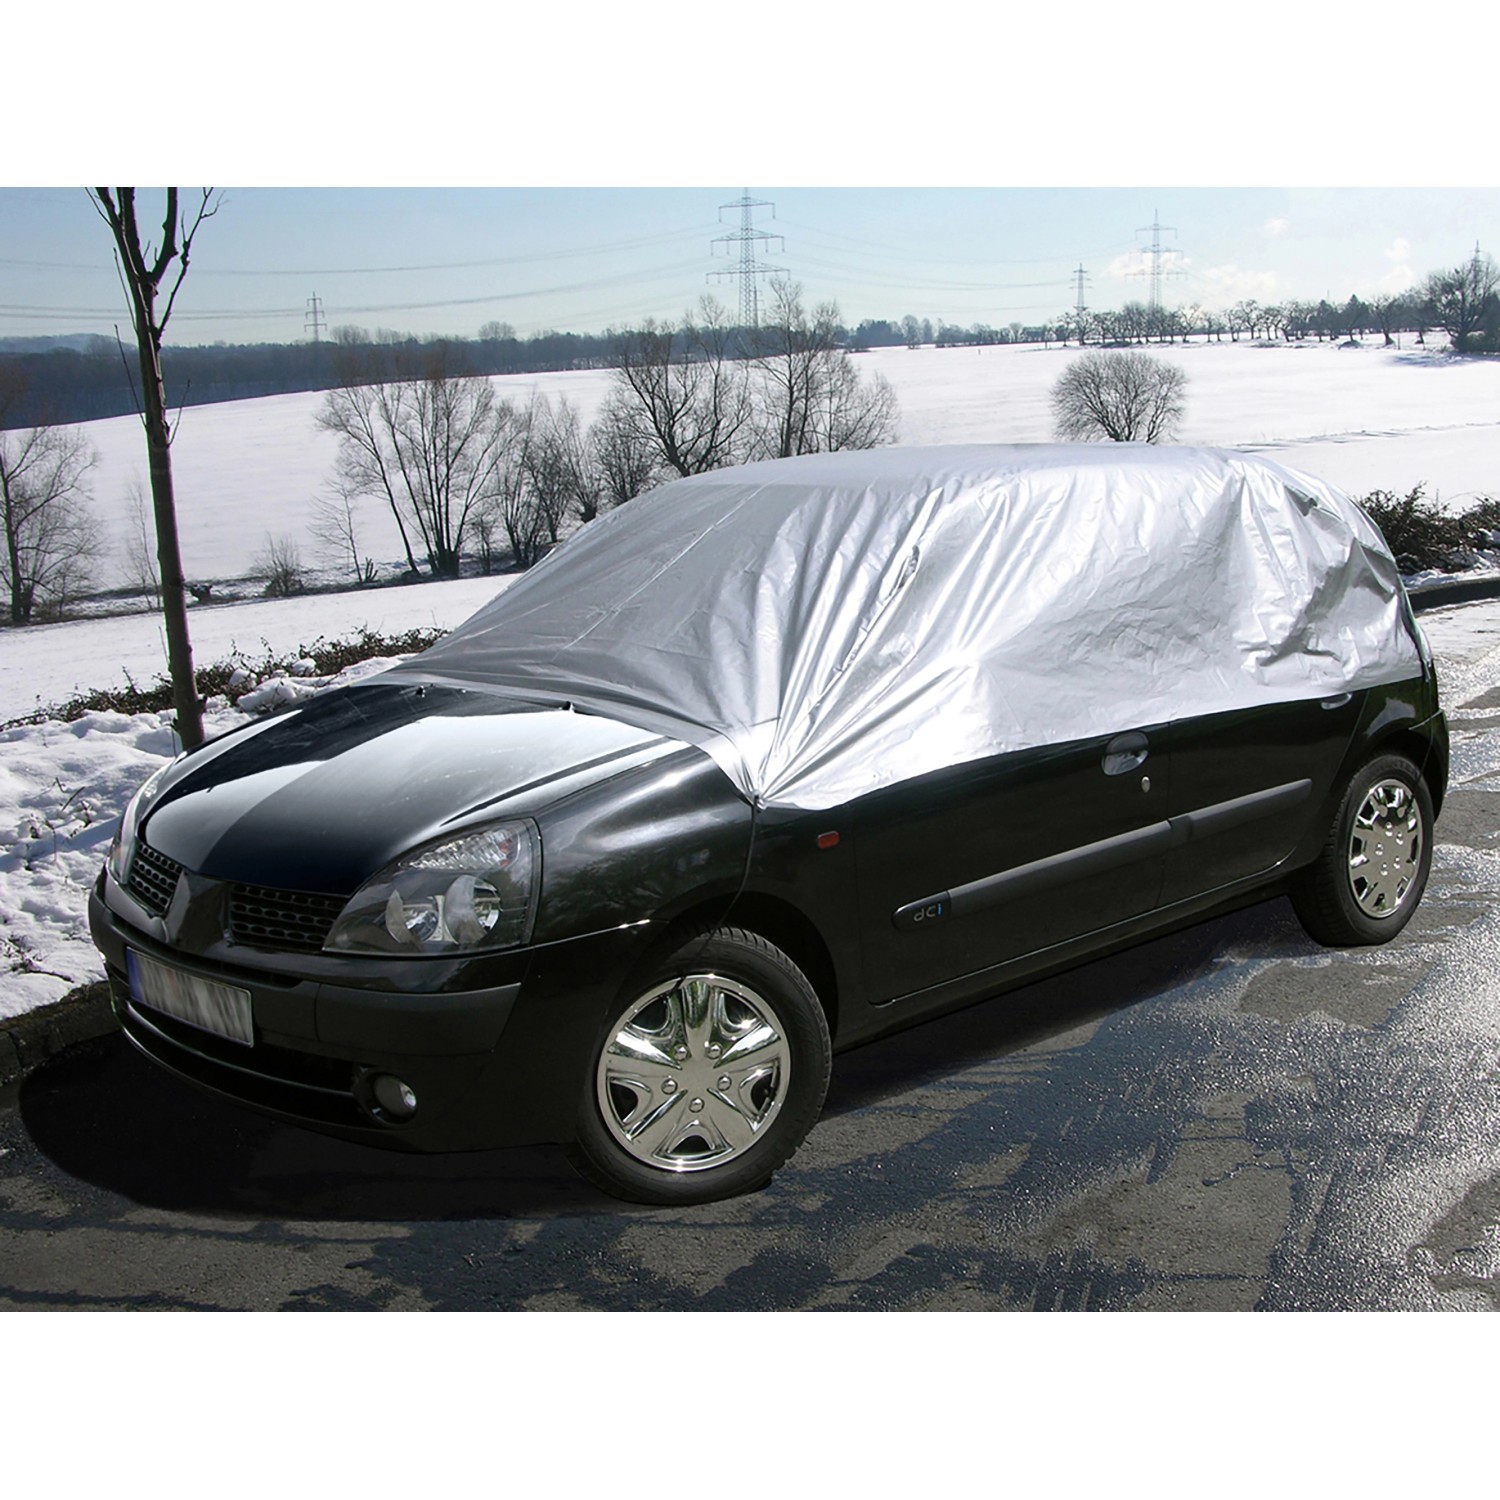 Premium Auto-Halbgarage für SUV & Kastenwagen, 435 x 142 x 62 cm